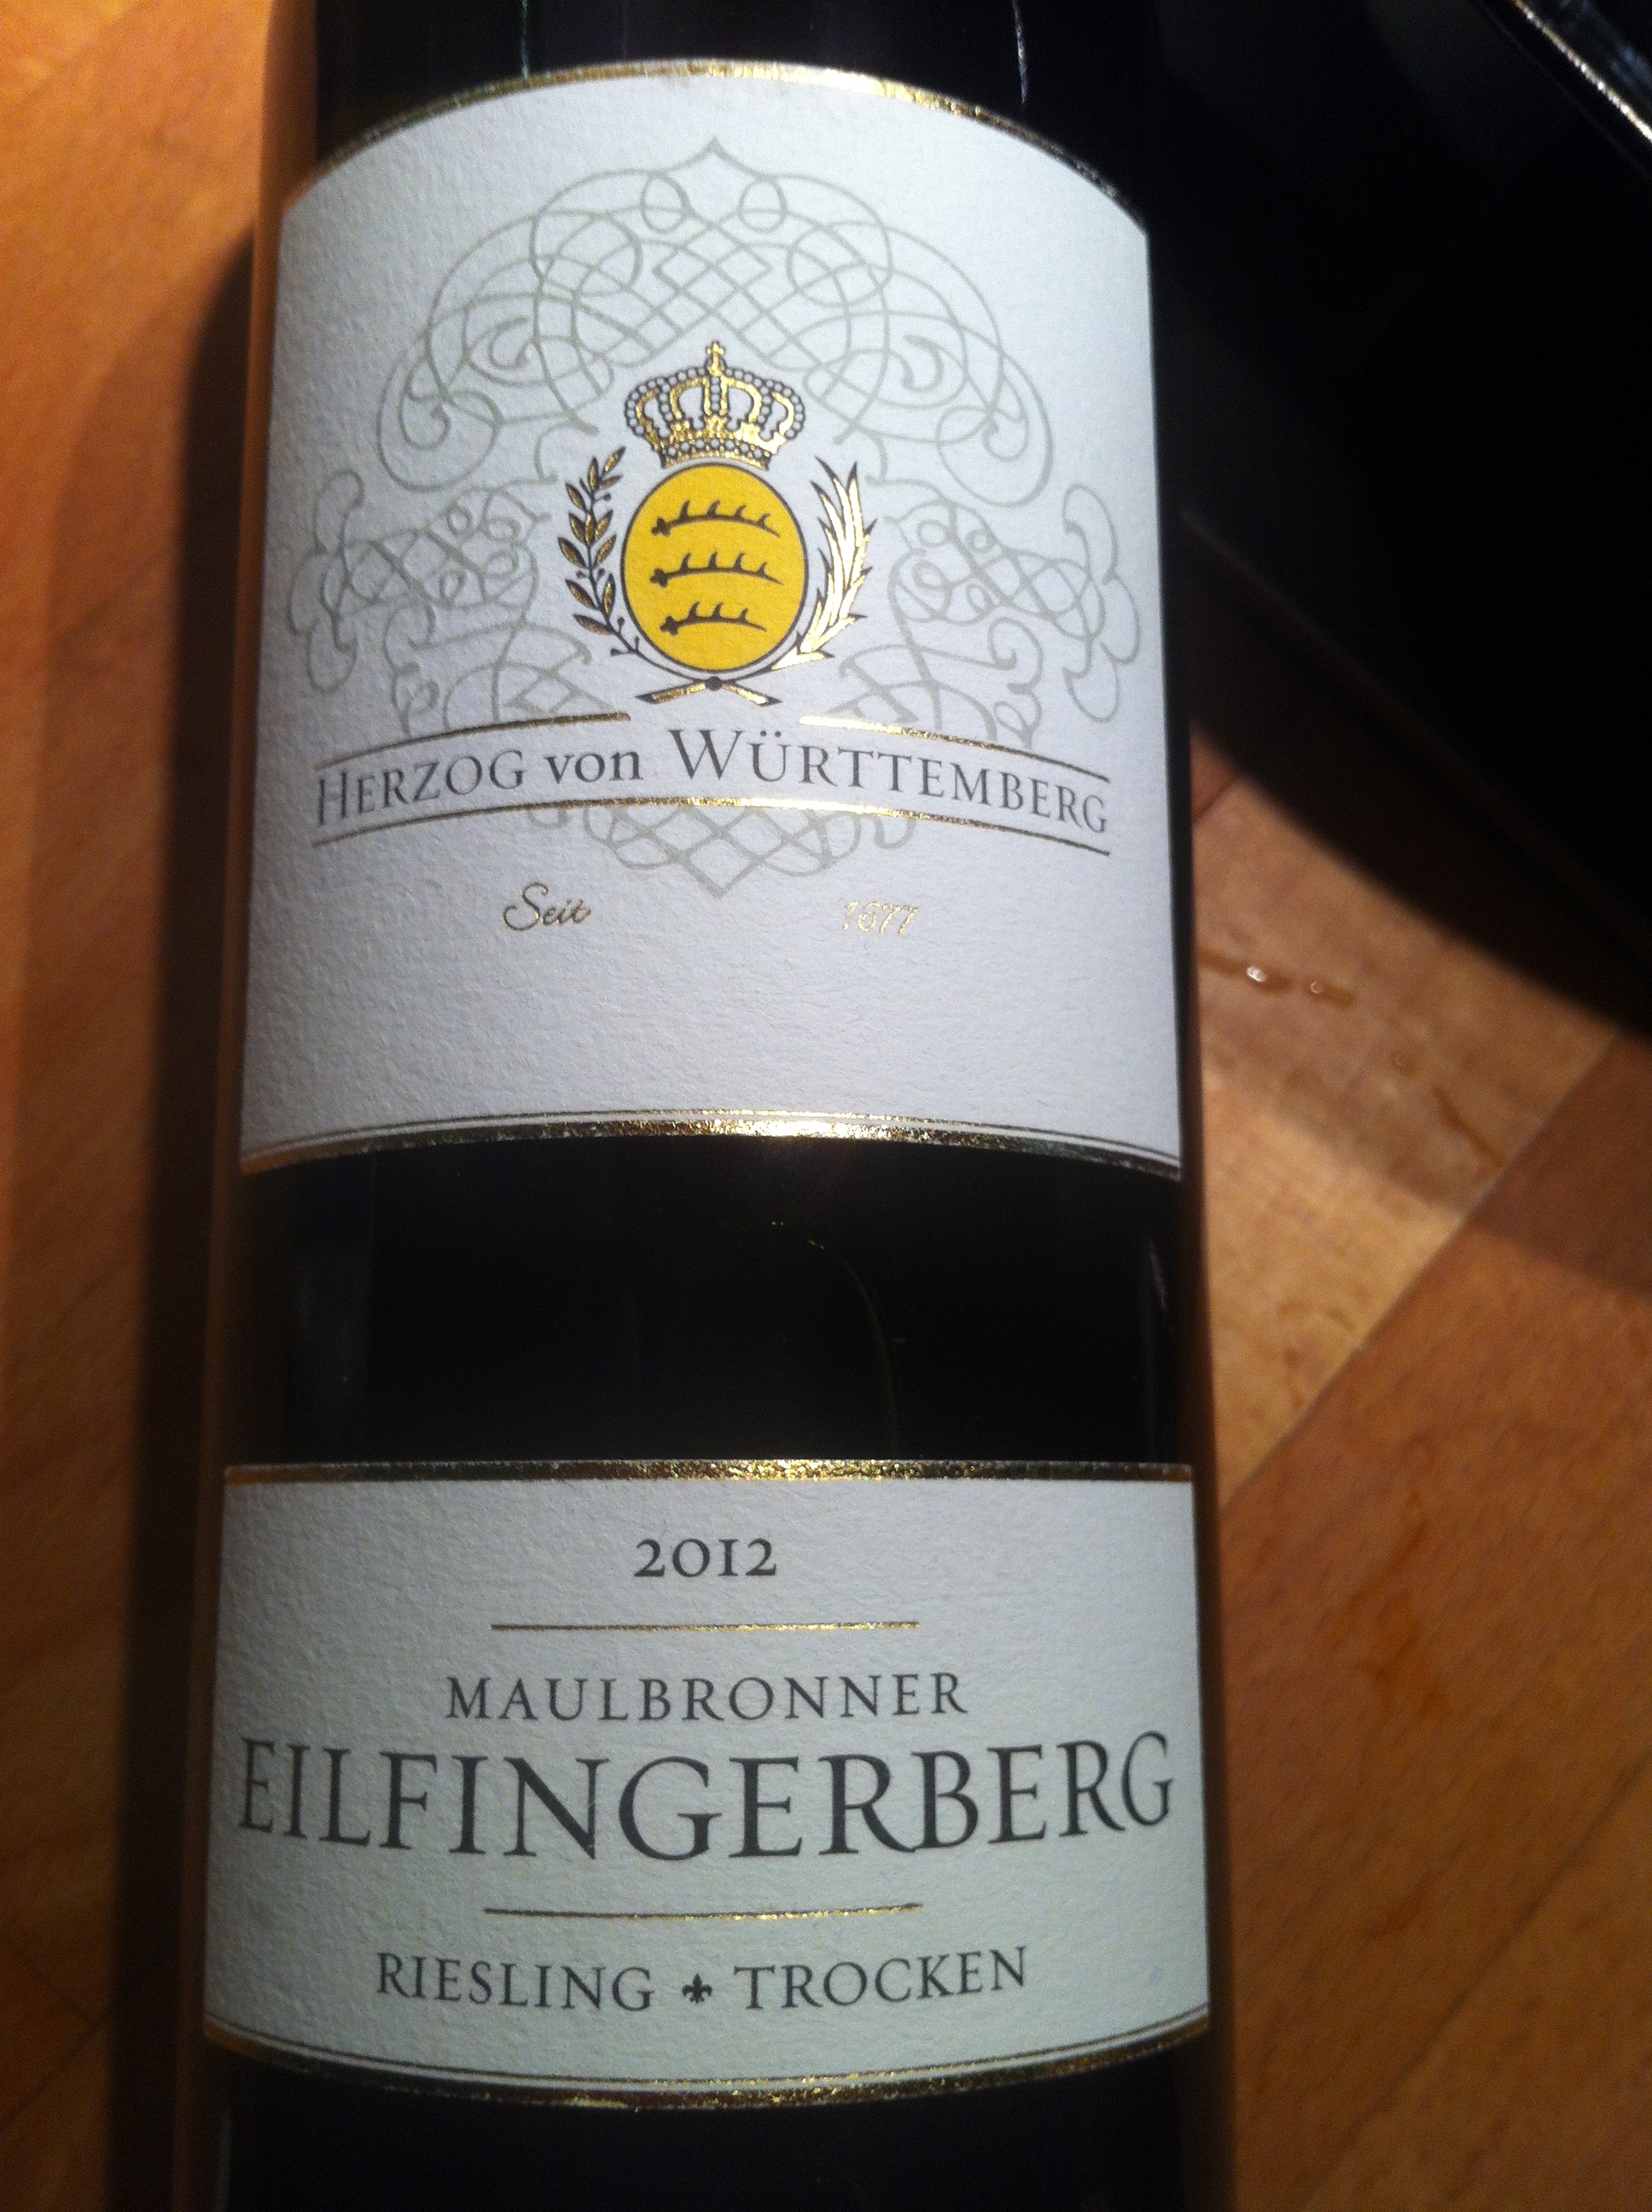 Maulbronner Eilfingerberg - Riesling 2012 aus der Klosterschmiede, Andenken vom Meet und Greet